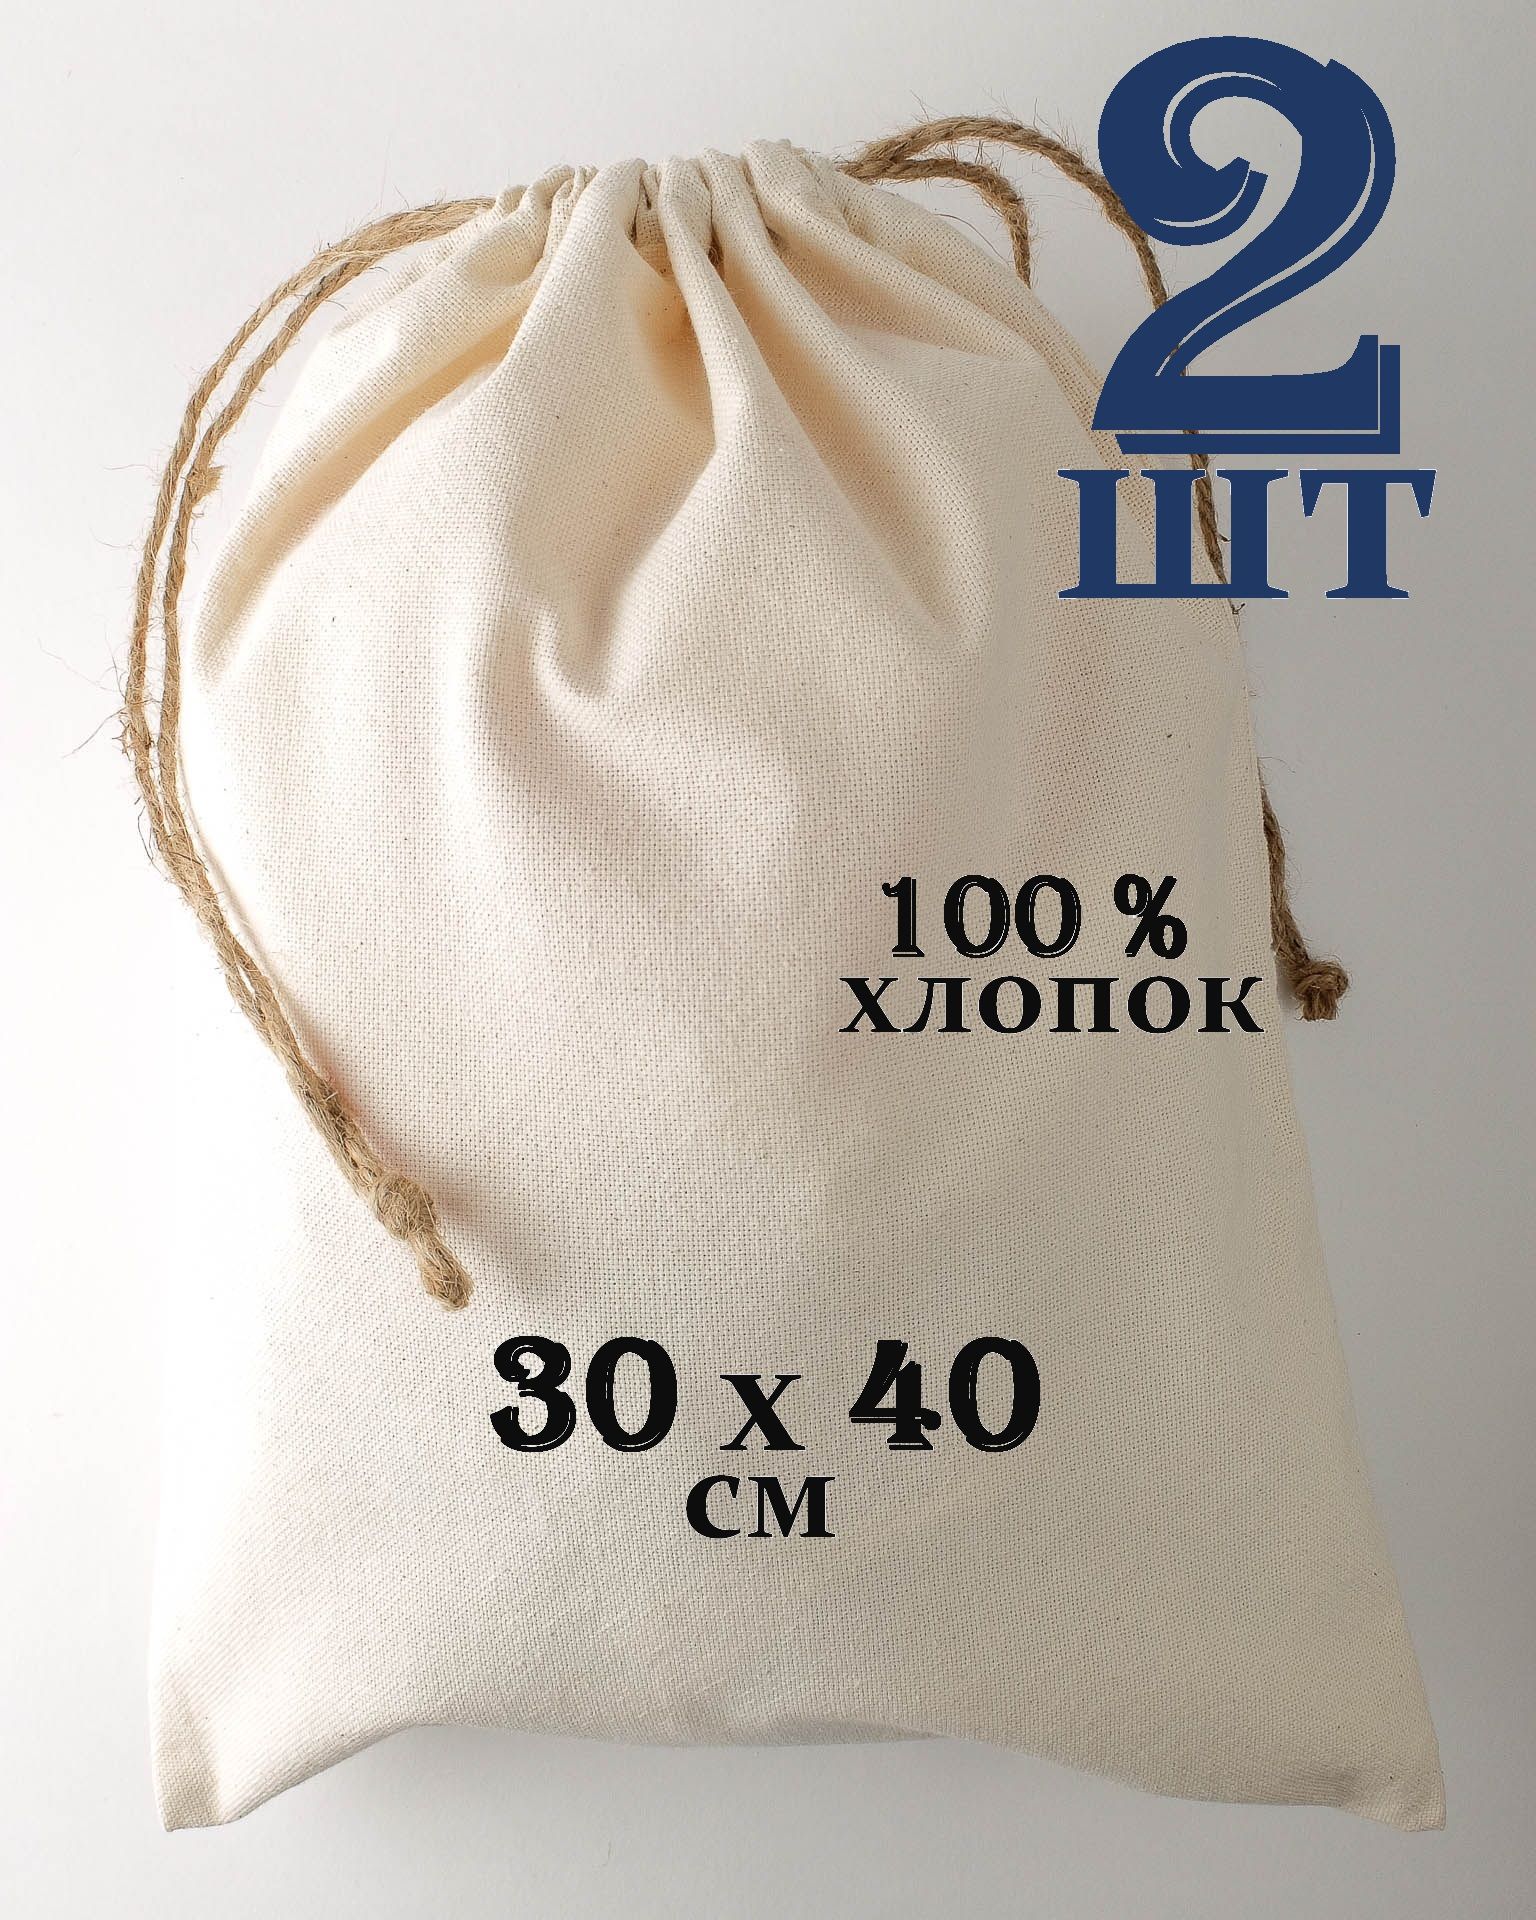 Мешочки для украшений купить в Москве оптом и в розницу по выгодной цене от эталон62.рф